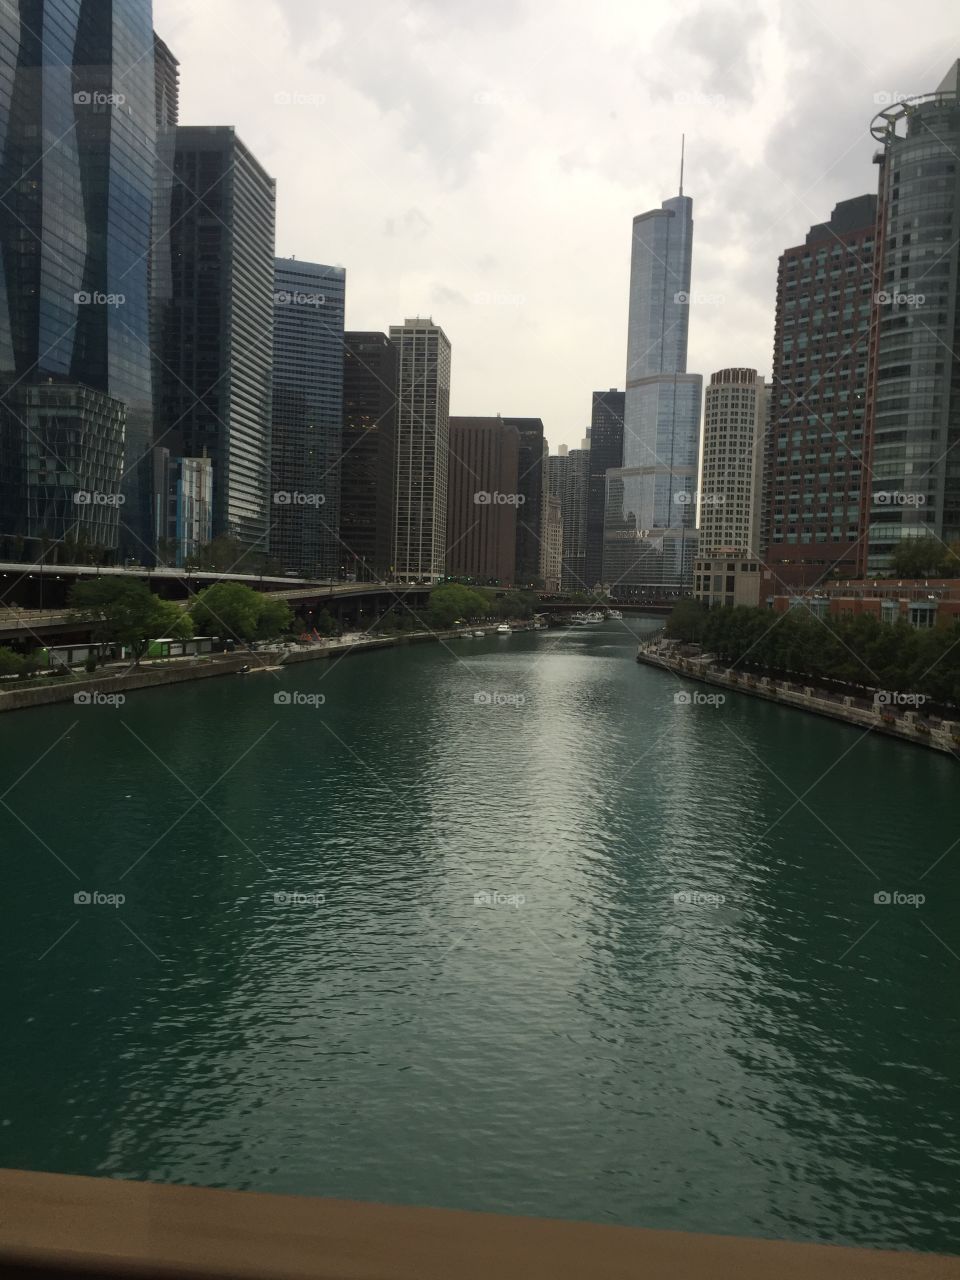 Chicago waterway 